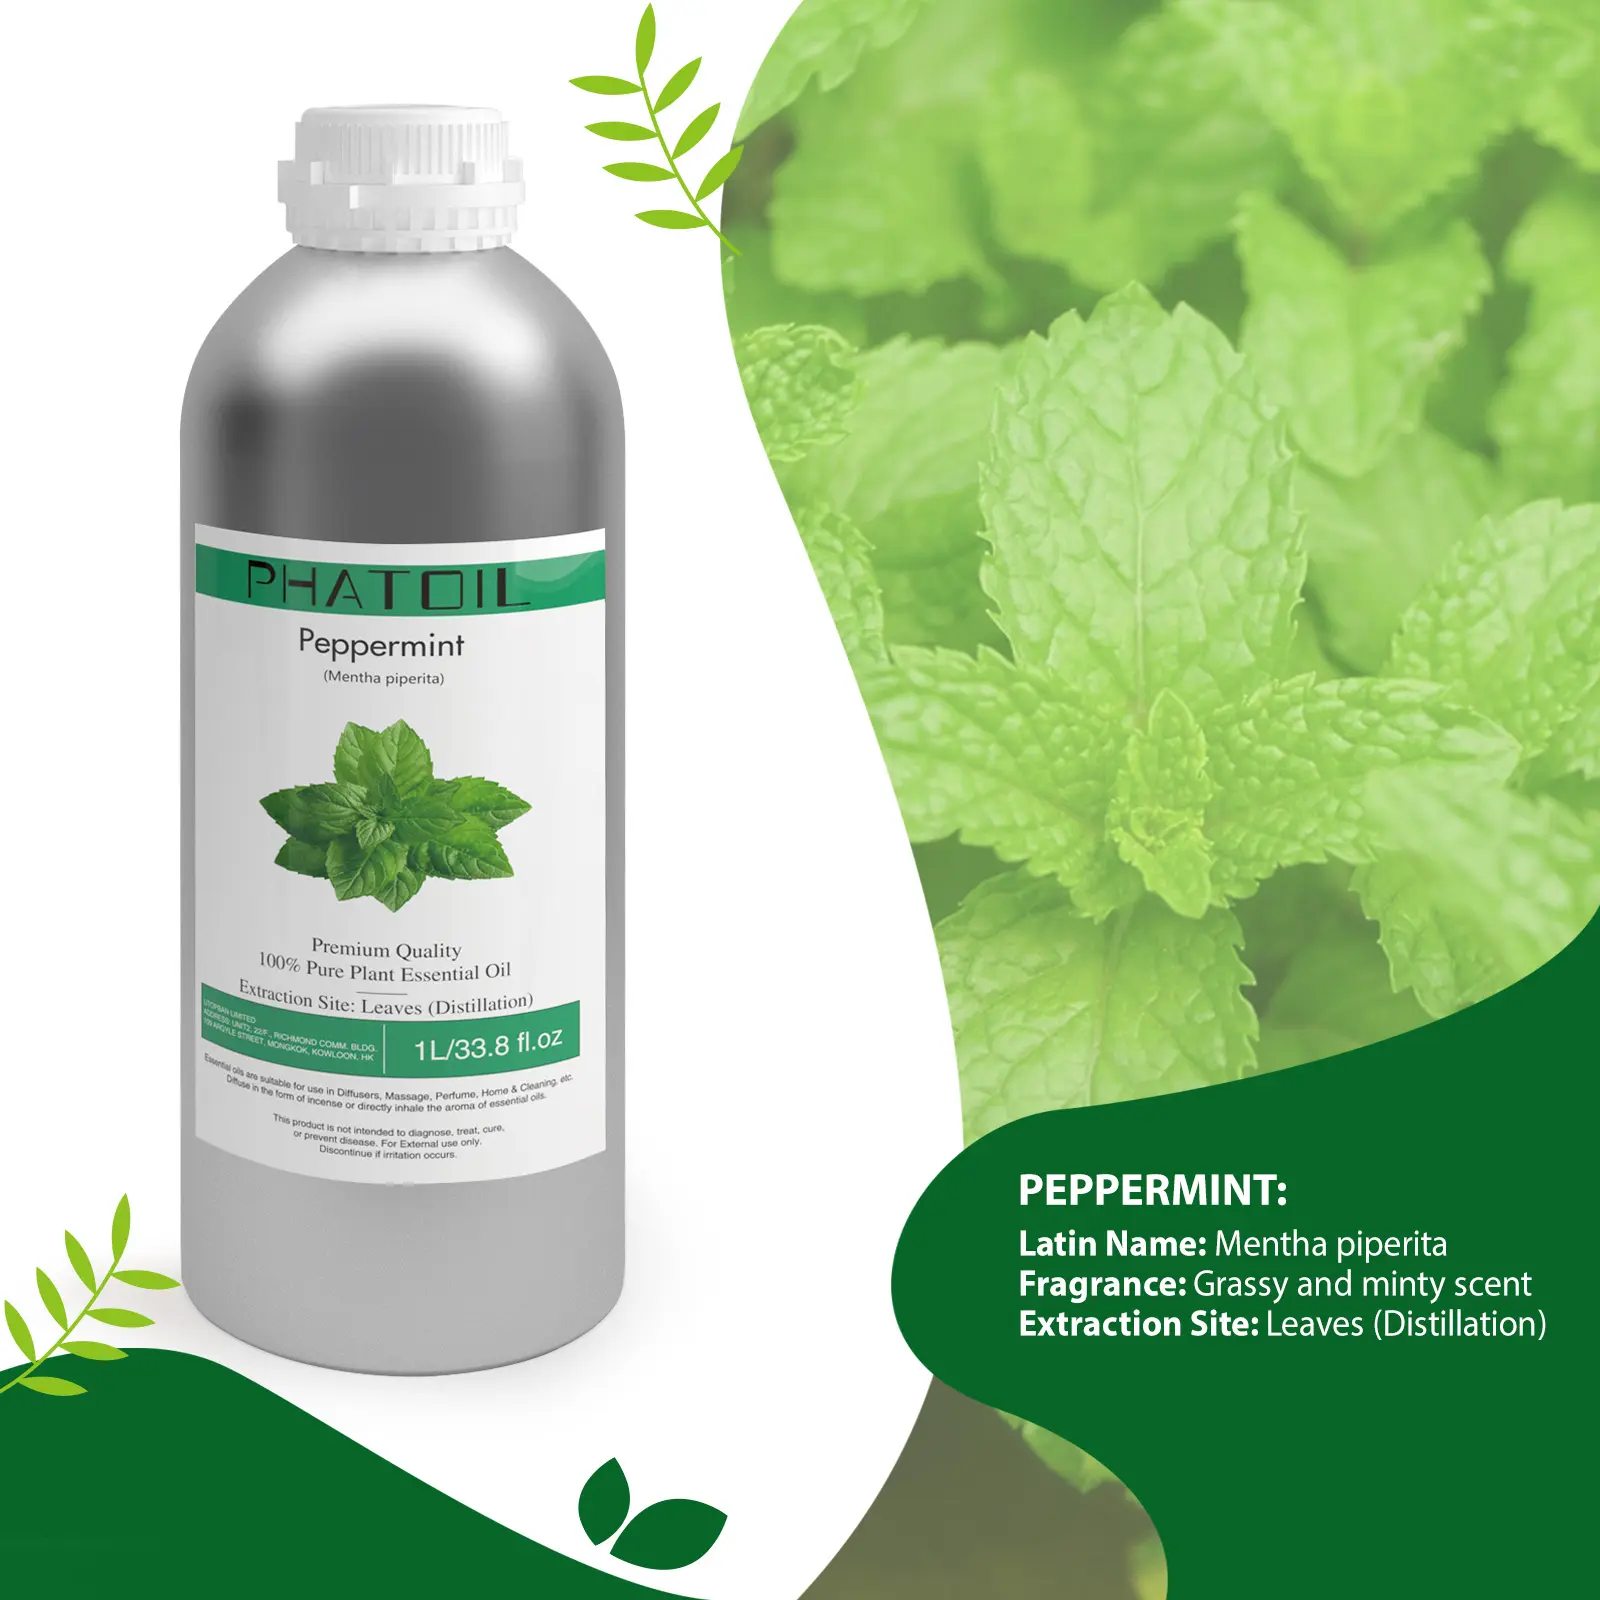 Extrait de plante en vrac d'usine huile essentielle de menthe poivrée de grande capacité pour les soins de la peau d'aromathérapie à domicile